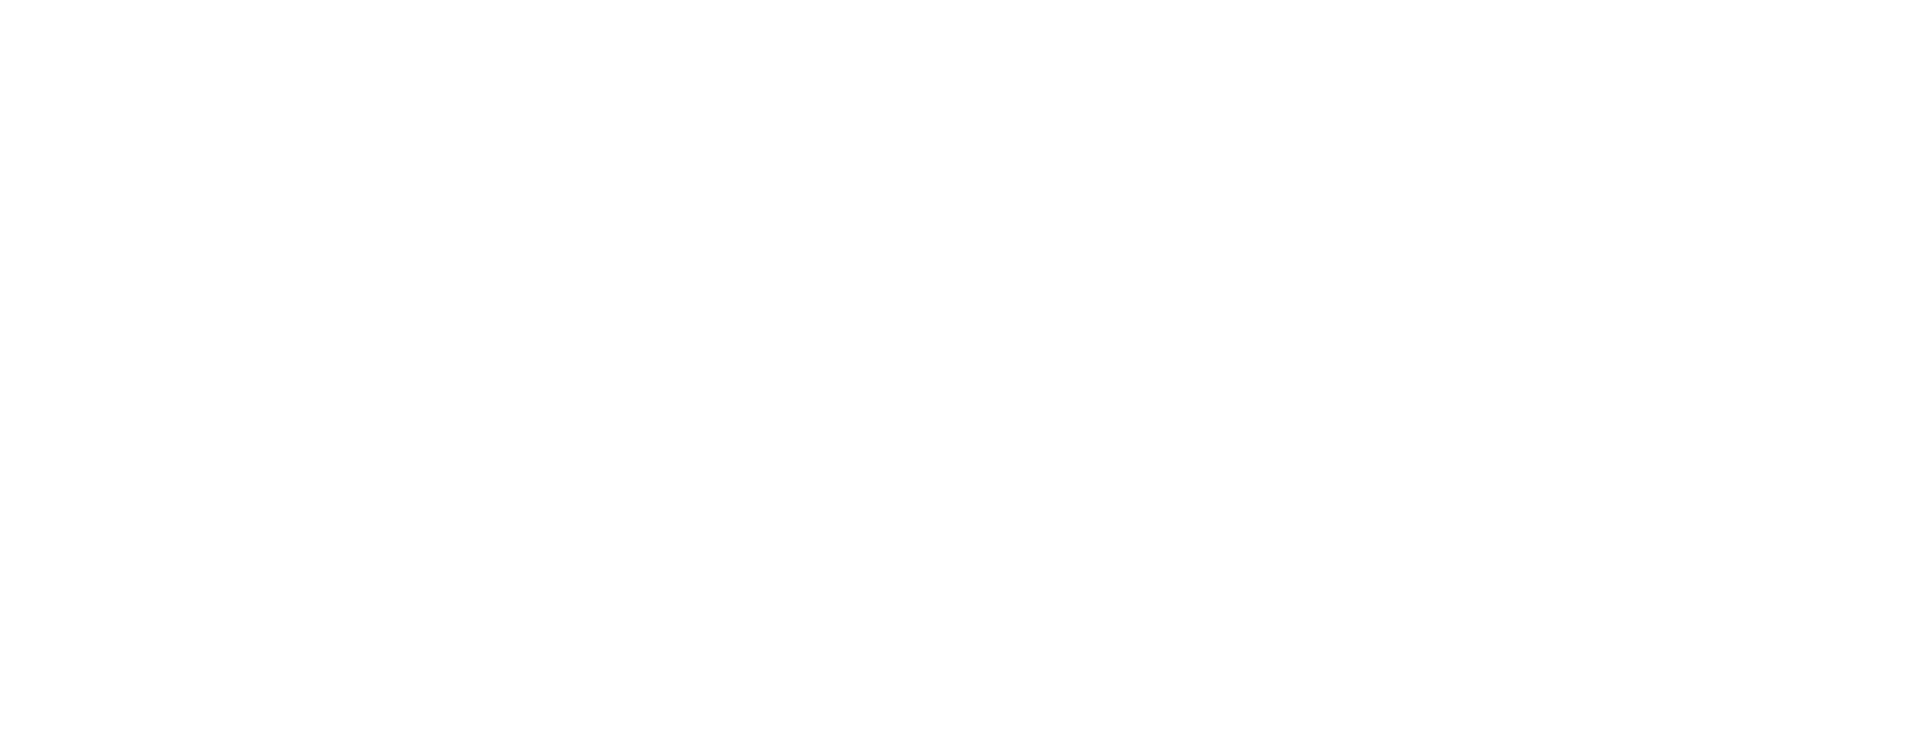 Listone Giordano - Classica